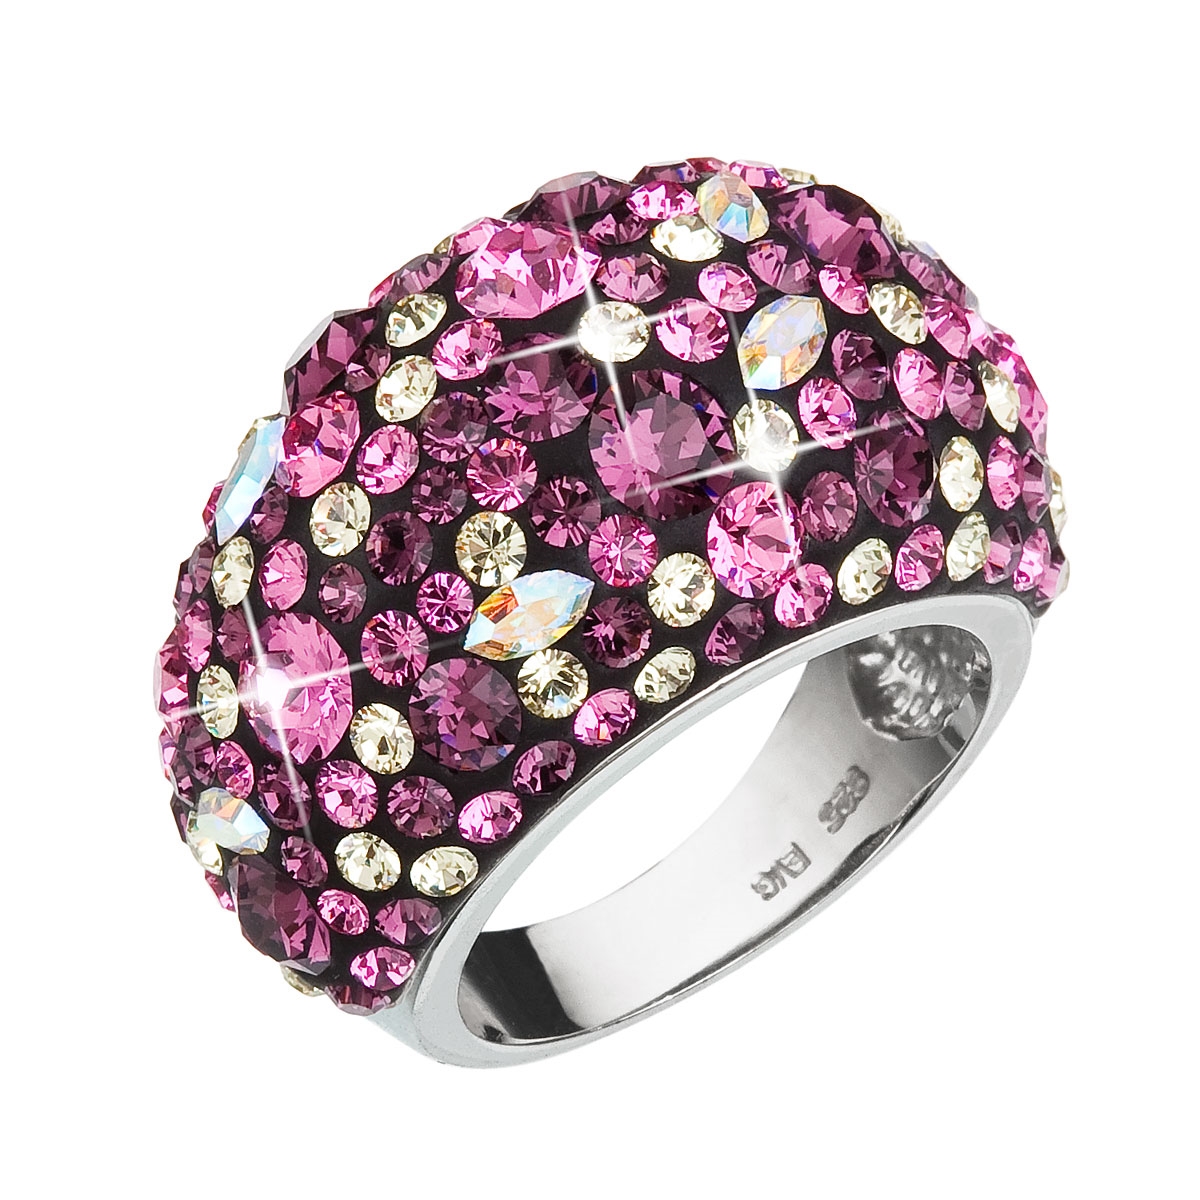 Strieborný prsteň s kryštálmi Crystals from Swarovski ®, Amethyst